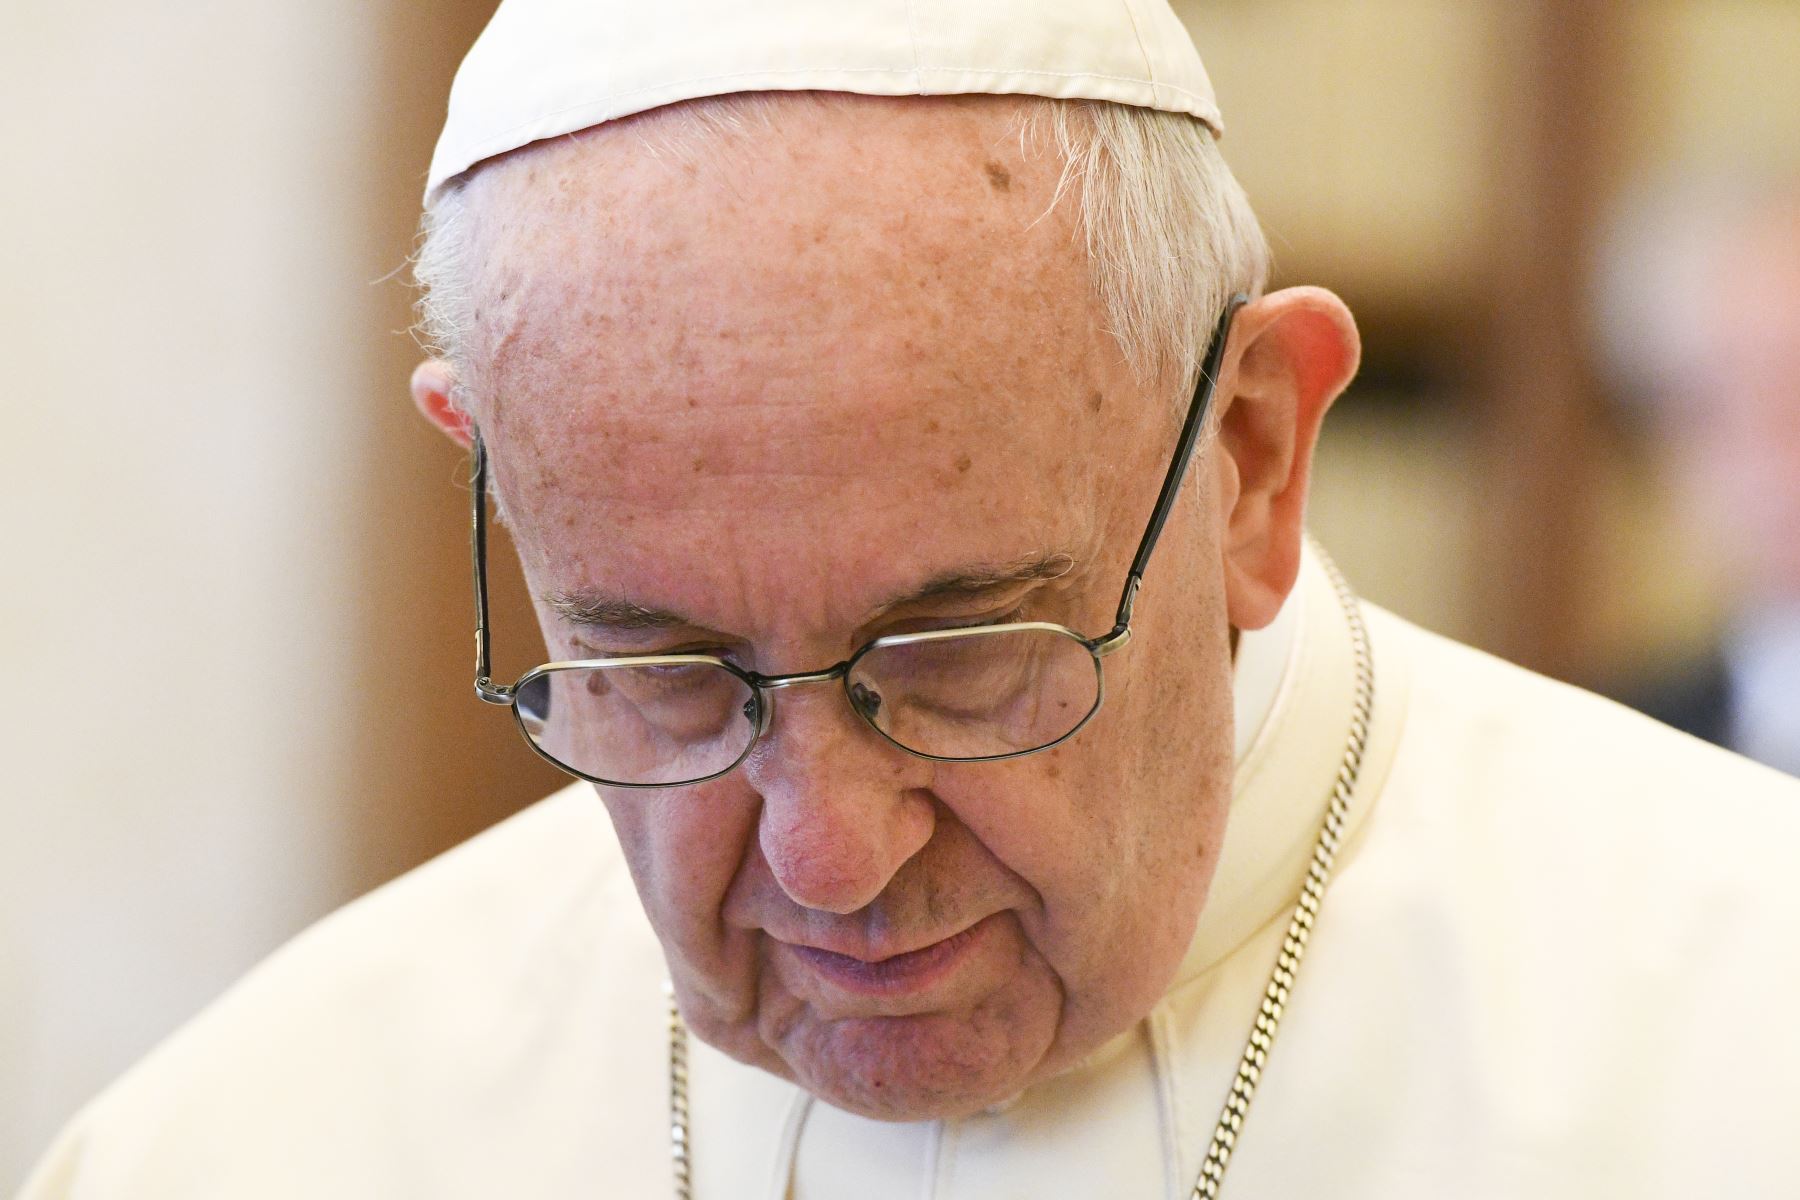 Los obispos chilenos pusieron sus cargos a disposición del papa Francisco tras los escándalos de abusos sexuales cometidos por religiosos en su país.        Foto: AFP